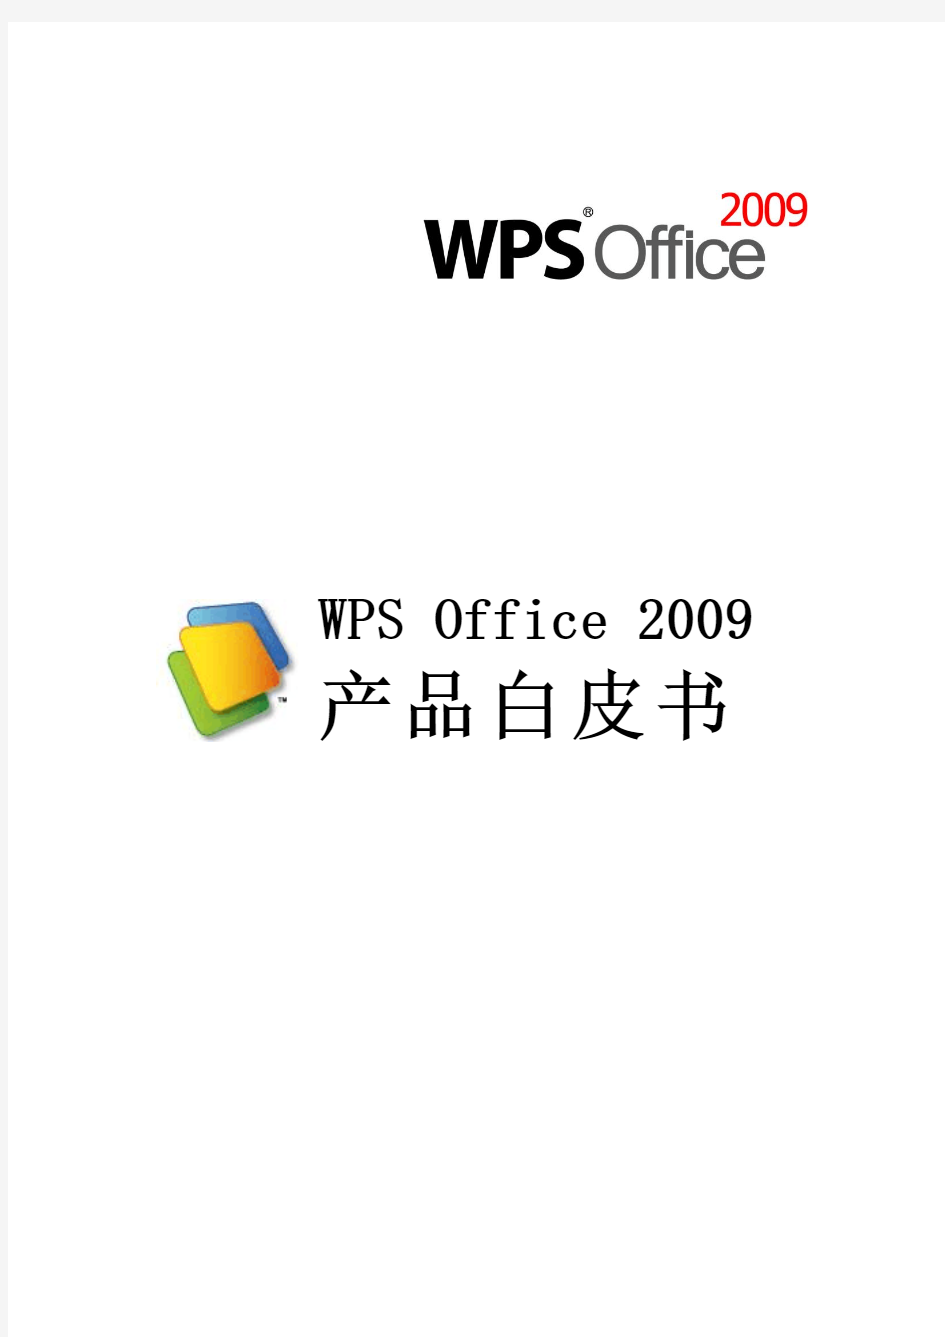 WPS Office 2009 产品白皮书(修定版)